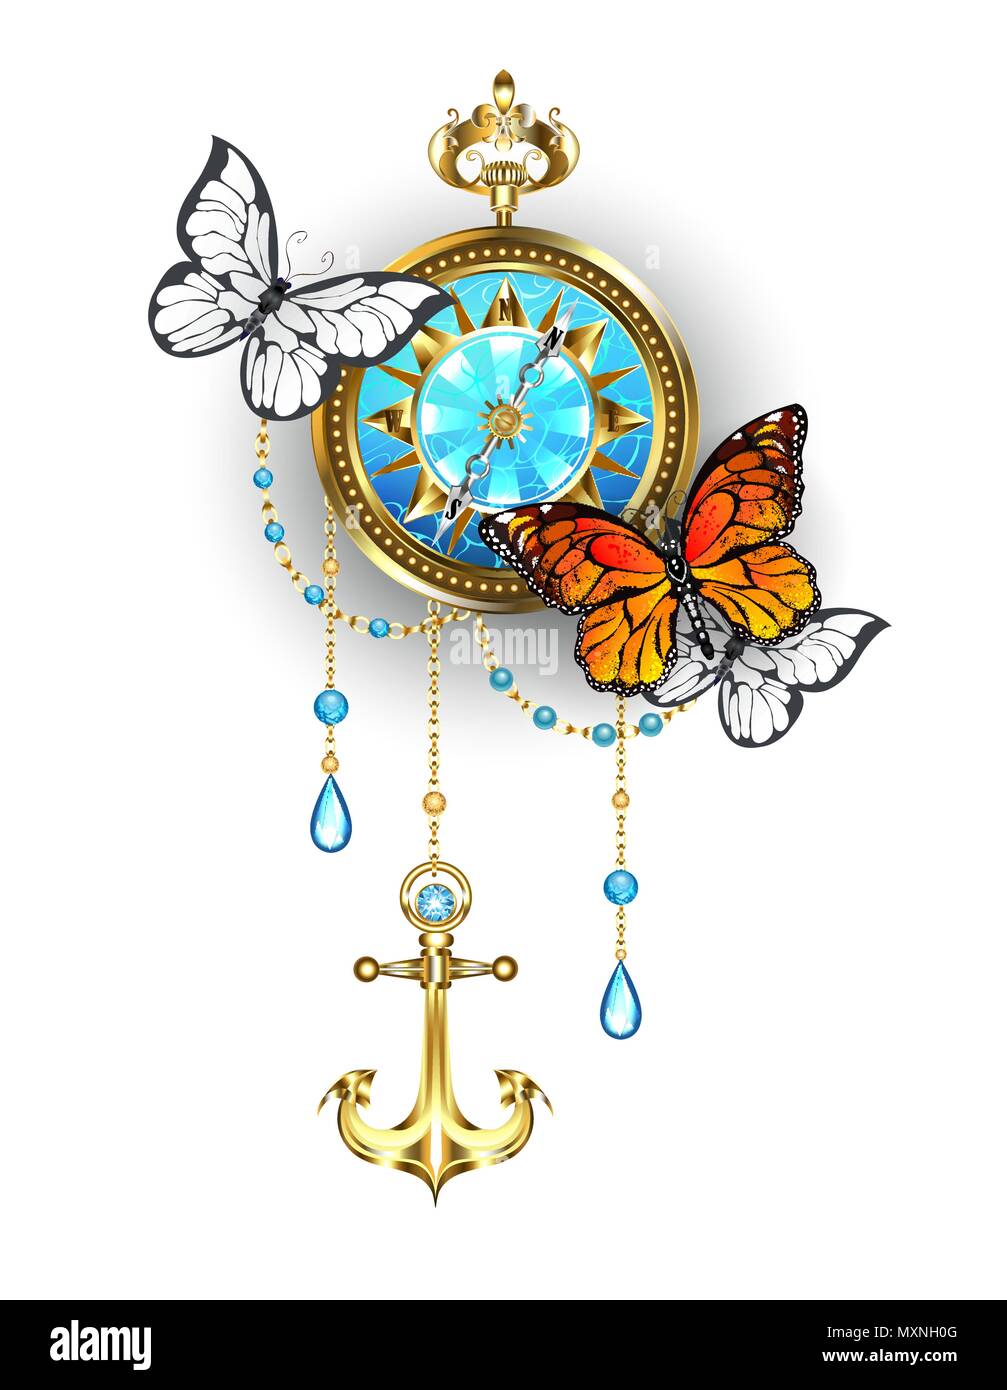 Boussole Antique décoré avec des chaînes en or et de l'ancre, avec les papillons blancs et orange. Illustration de Vecteur